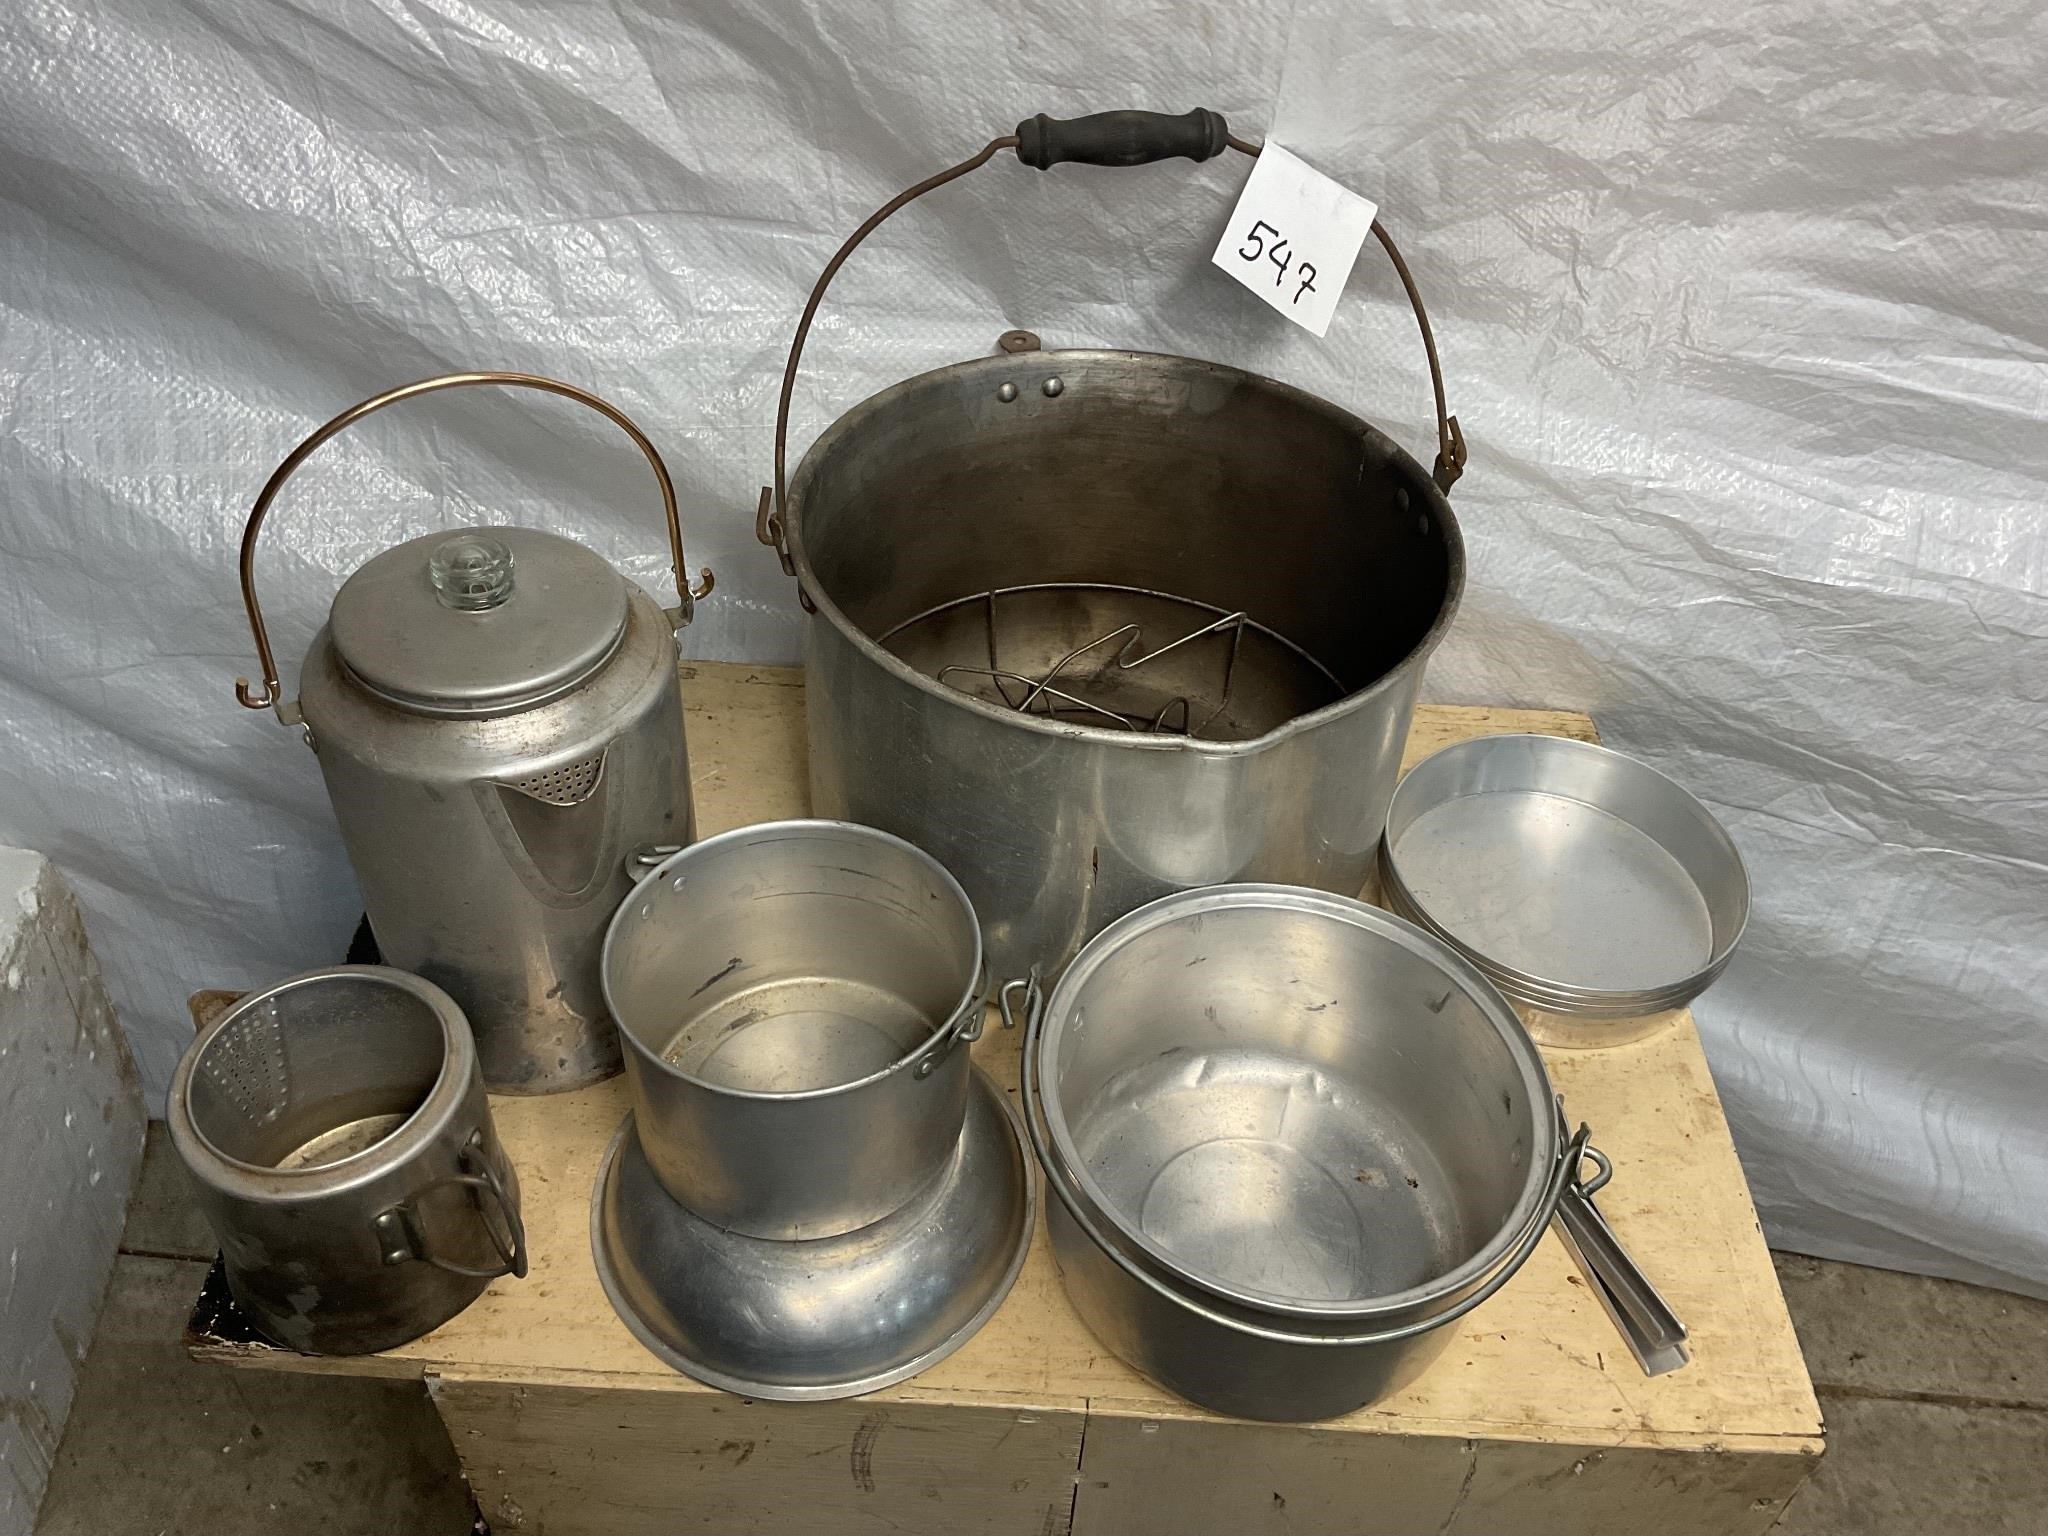 Camping pots, pans, coffee, pots bowl, etc.